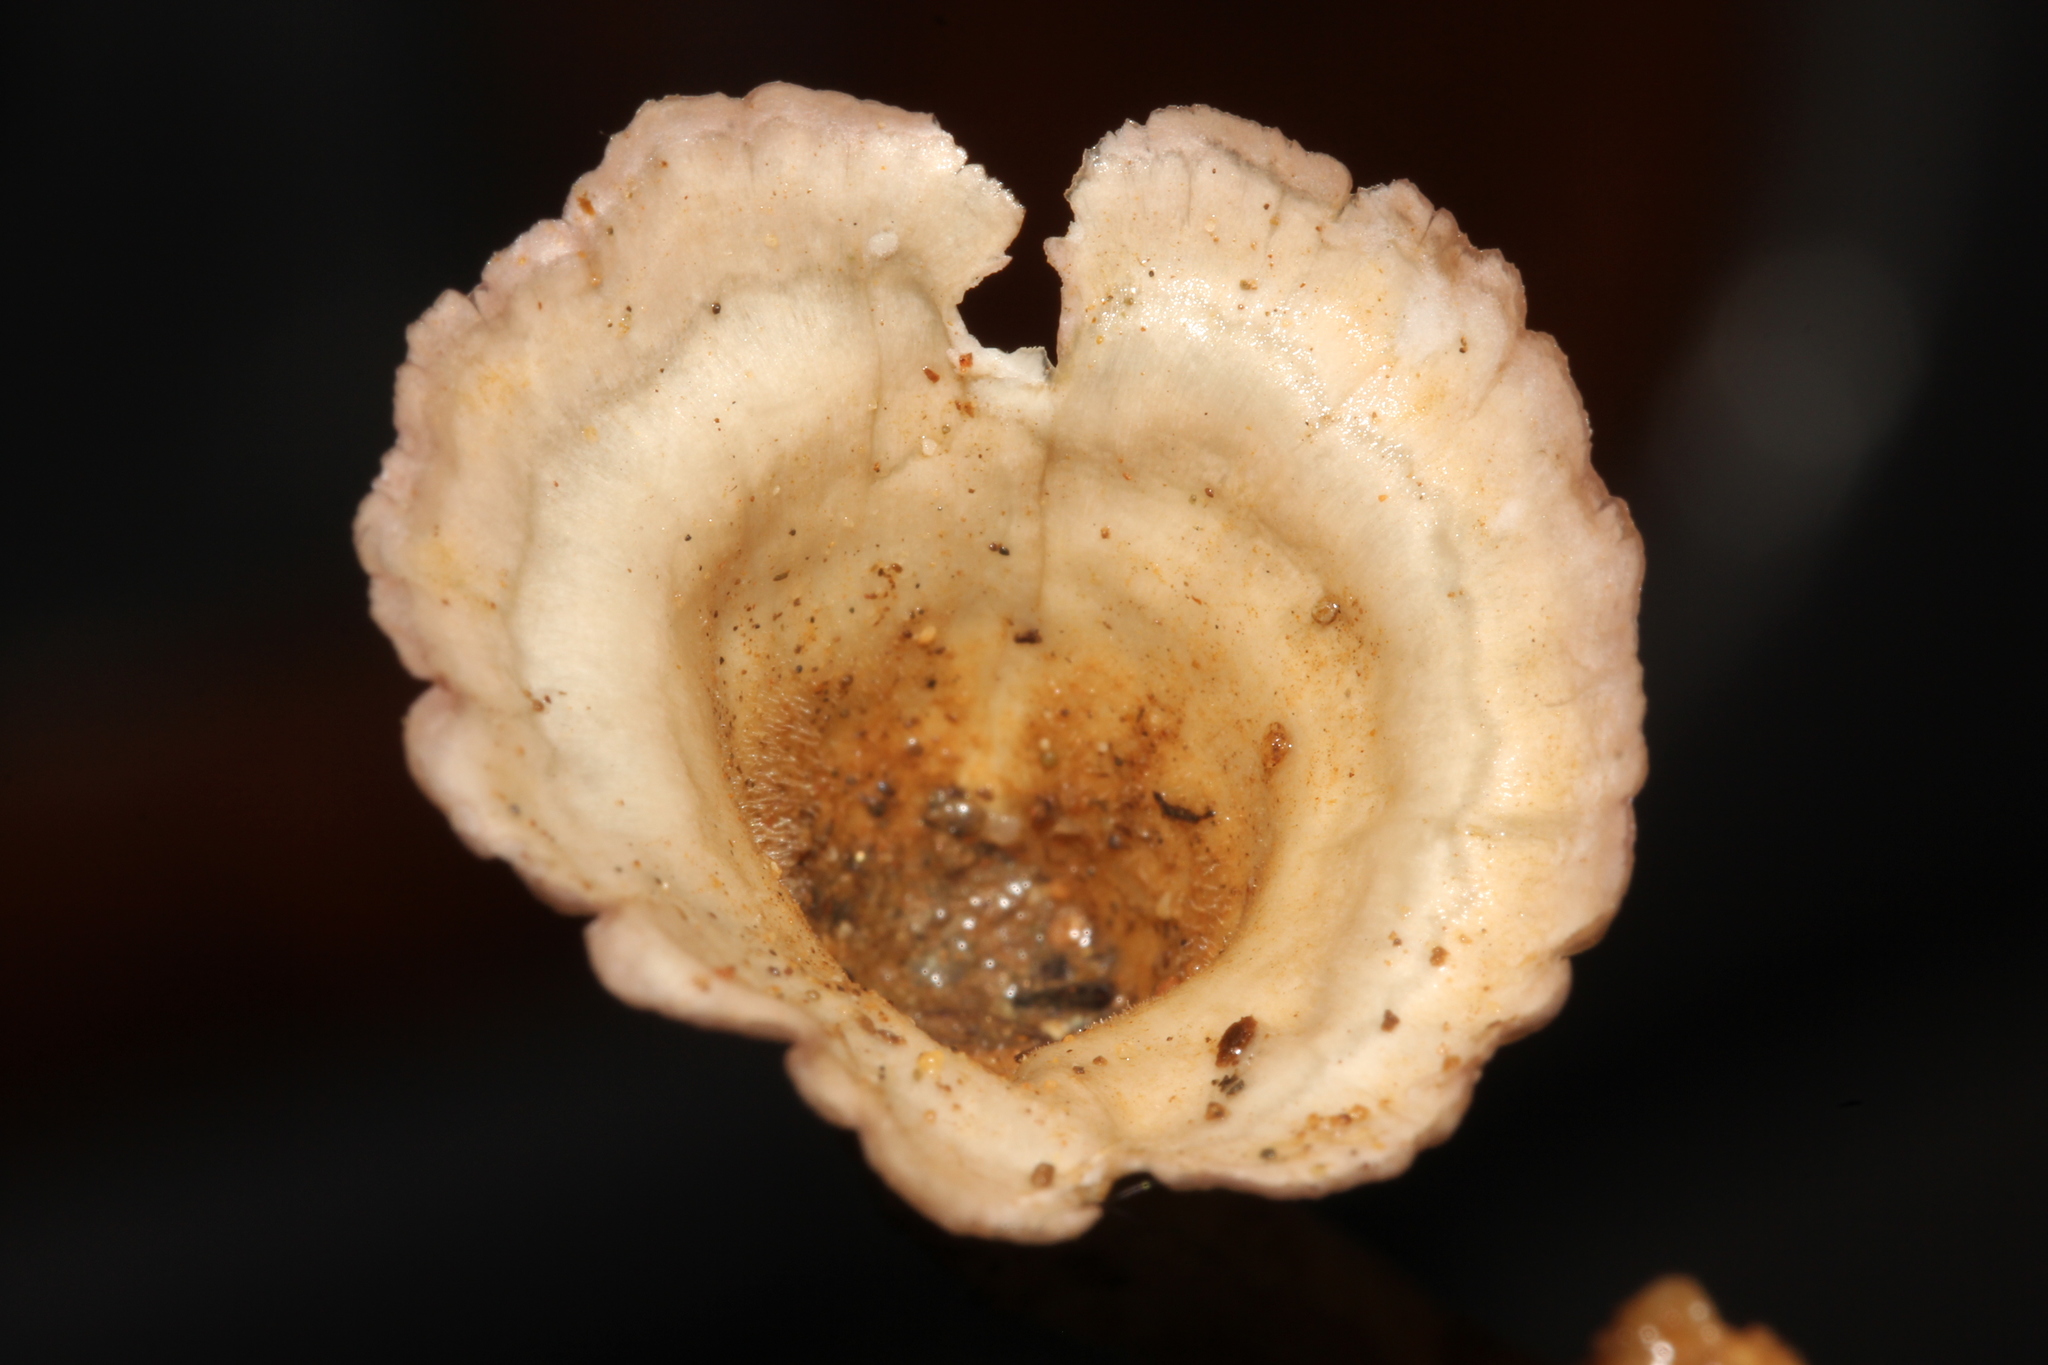 Cymatoderma image